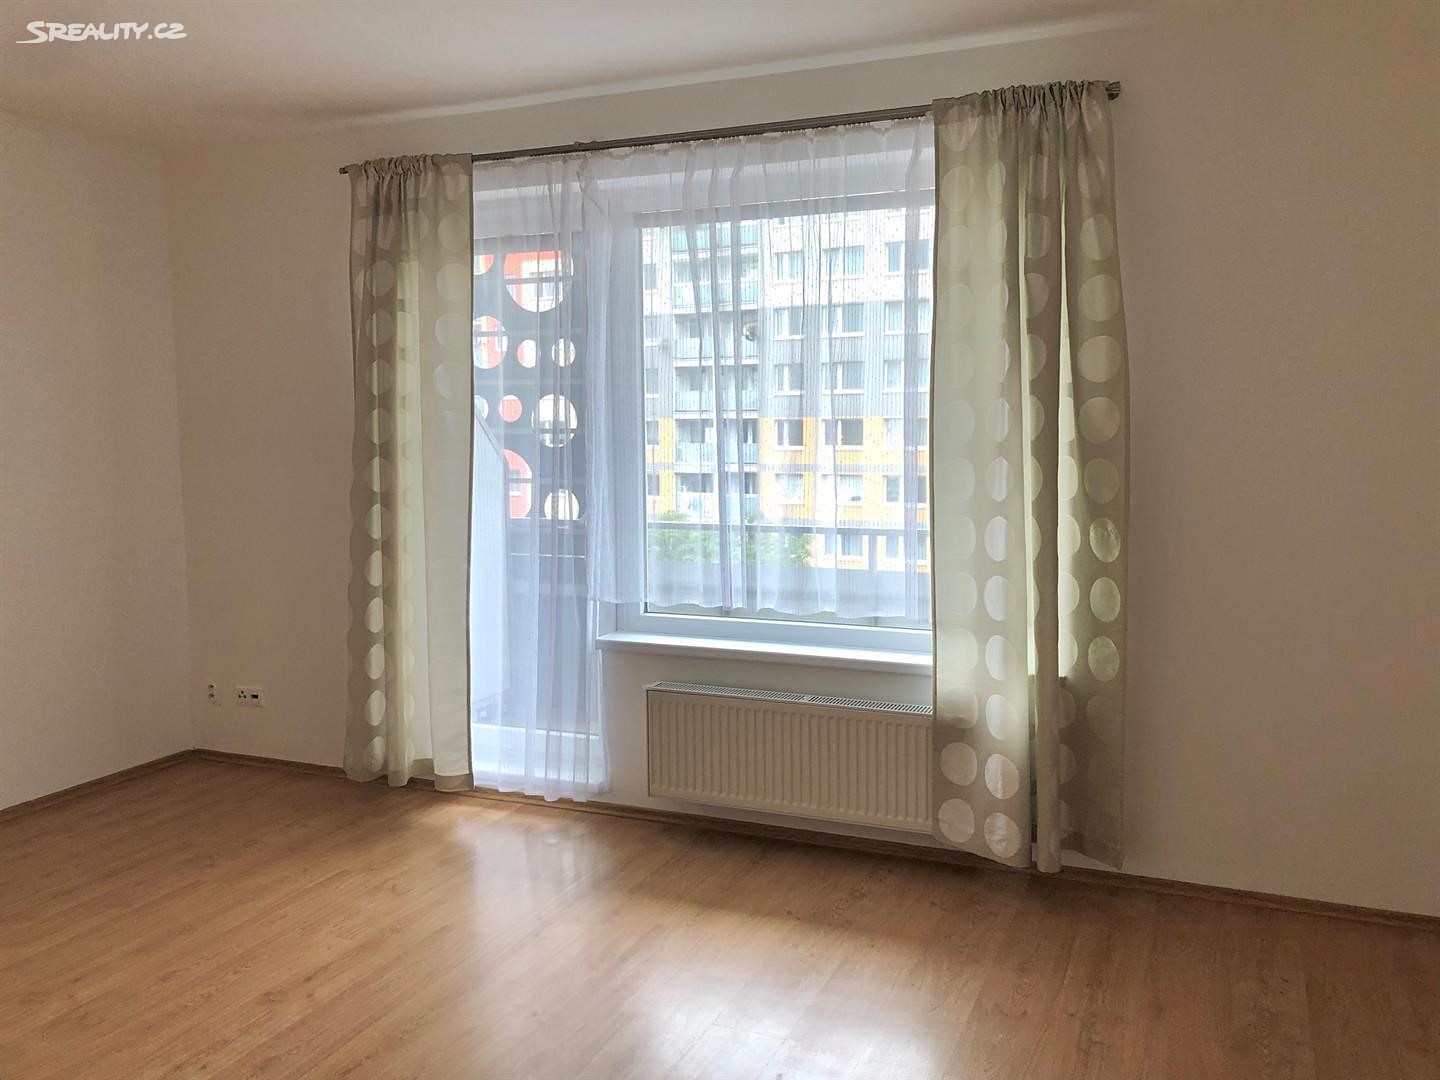 Pronájem bytu 1+kk 39 m², Hornoměcholupská, Praha 10 - Horní Měcholupy